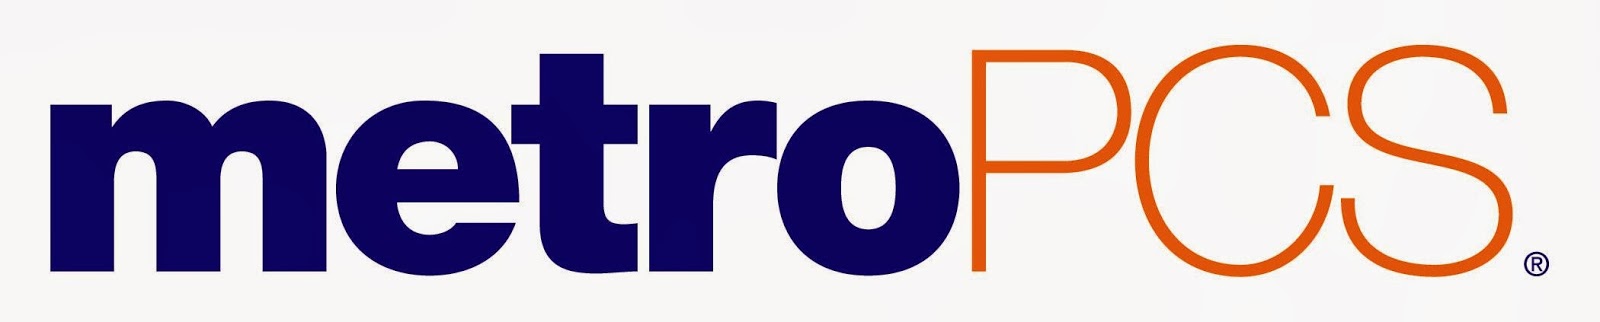 Metro pcs Logos